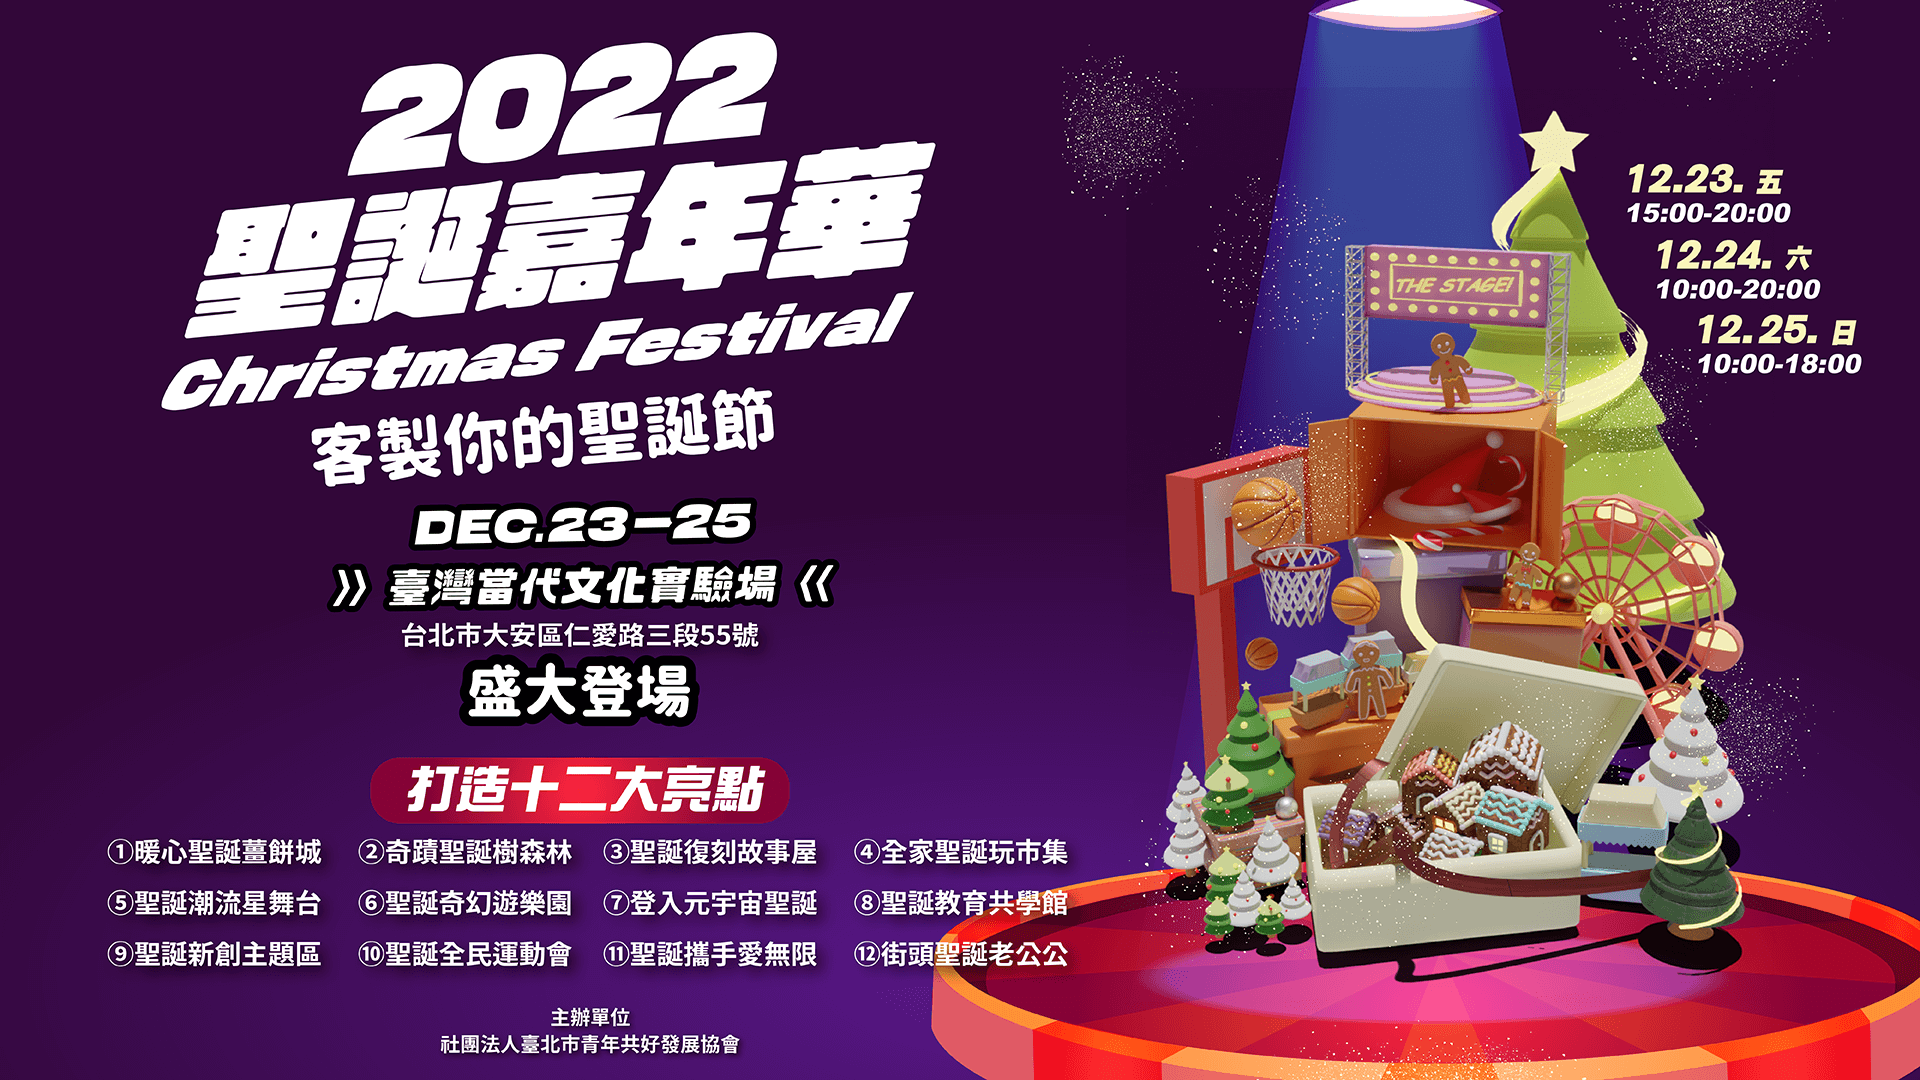 【2022聖誕嘉年華】12/23-25盛大登場 12大亮點搶先看